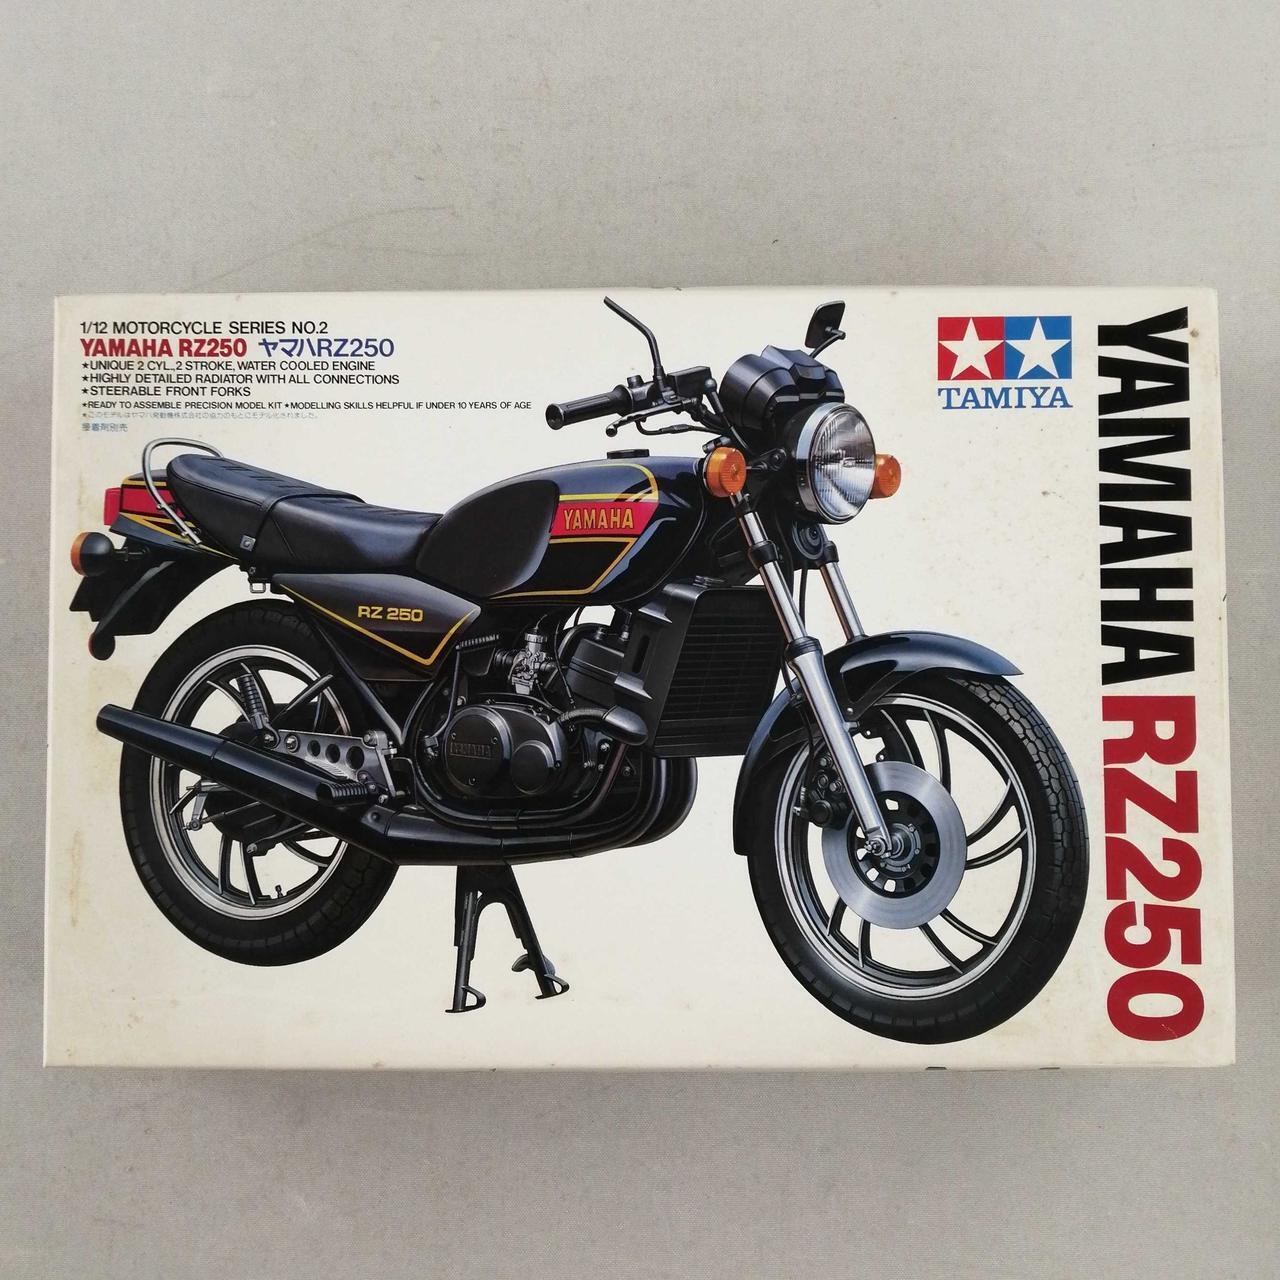 Tamiya Yamaha Rz250 1/12 Scale